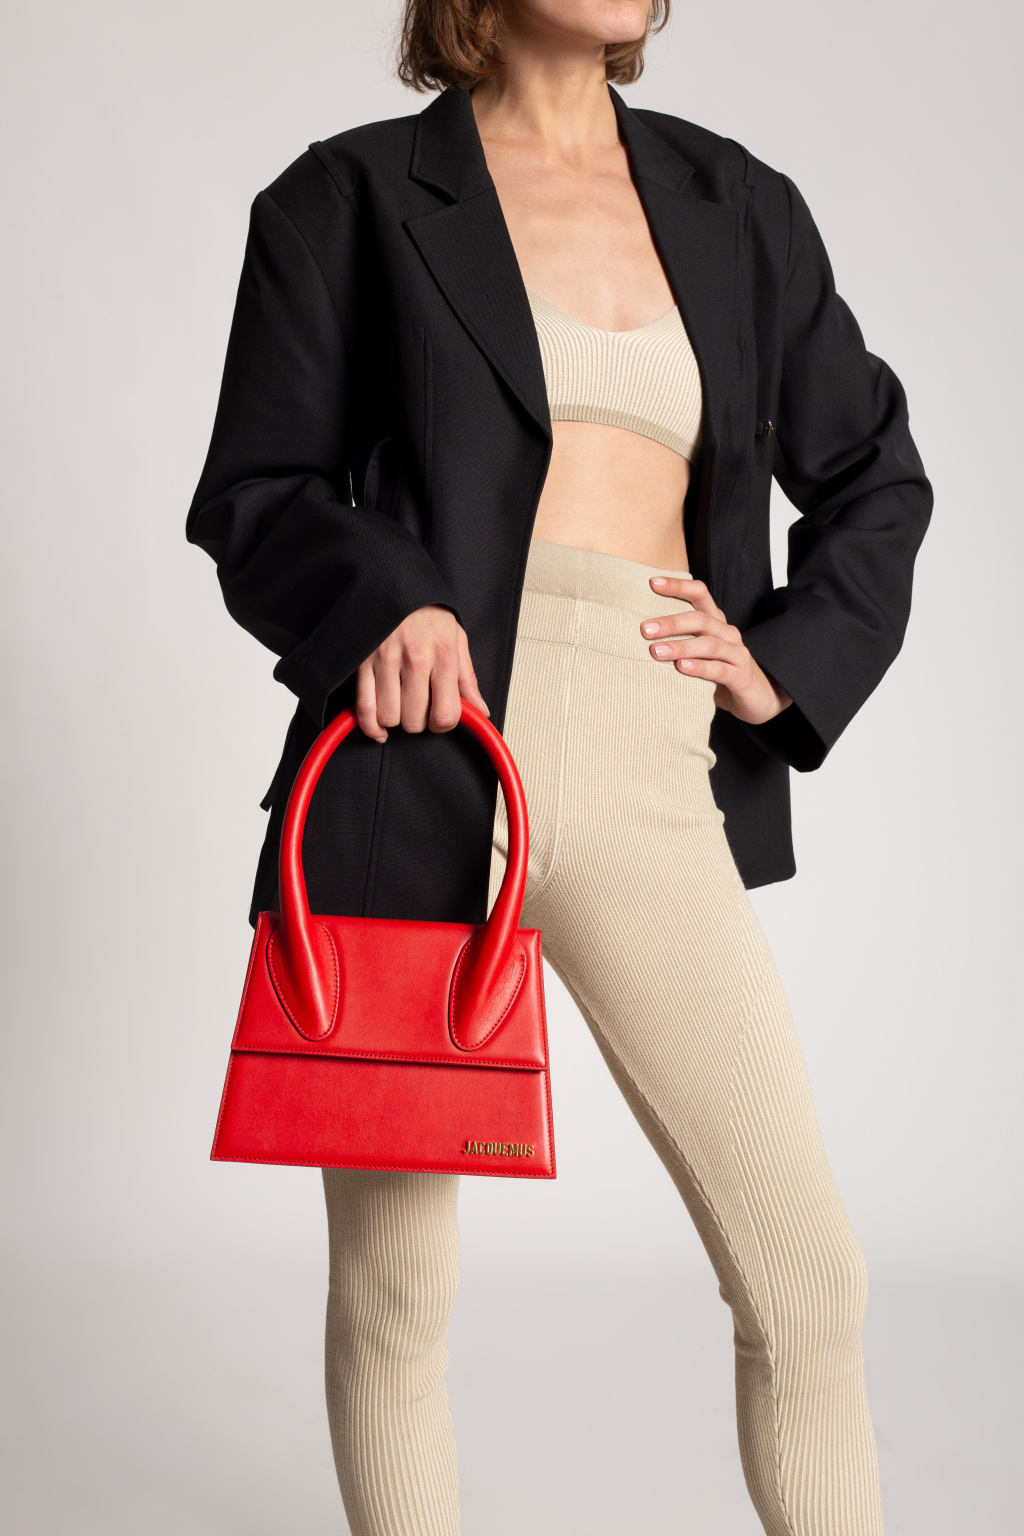 Jacquemus 'Le Grand Chiquito' shoulder bag, Women's Bags